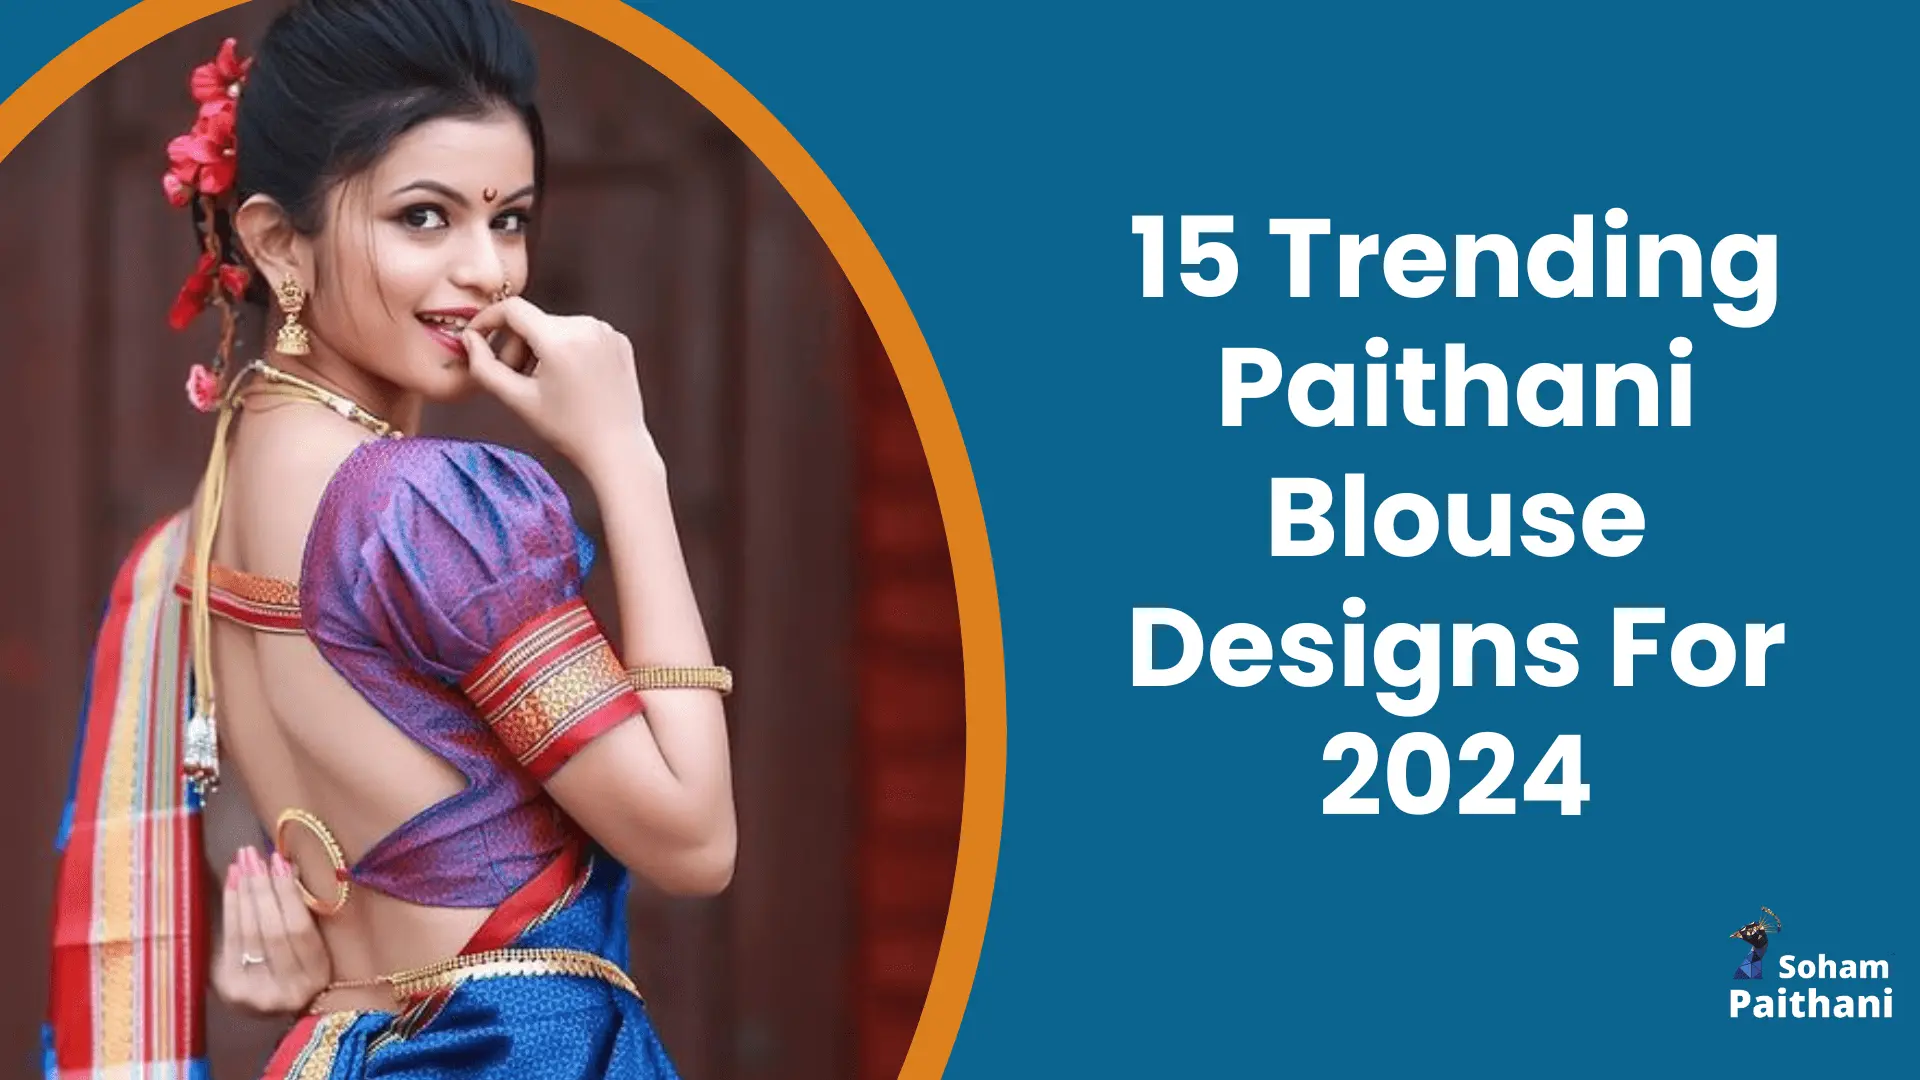 15 Trending Paithani Blouse Designs For 2024